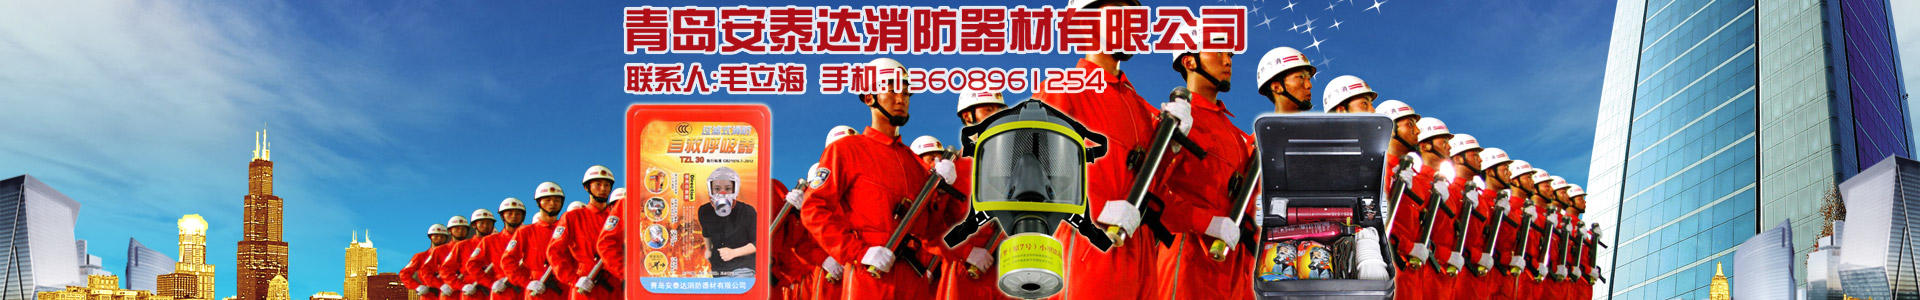 干粉灌装机-维修设备-青岛安泰达消防器材有限公司-